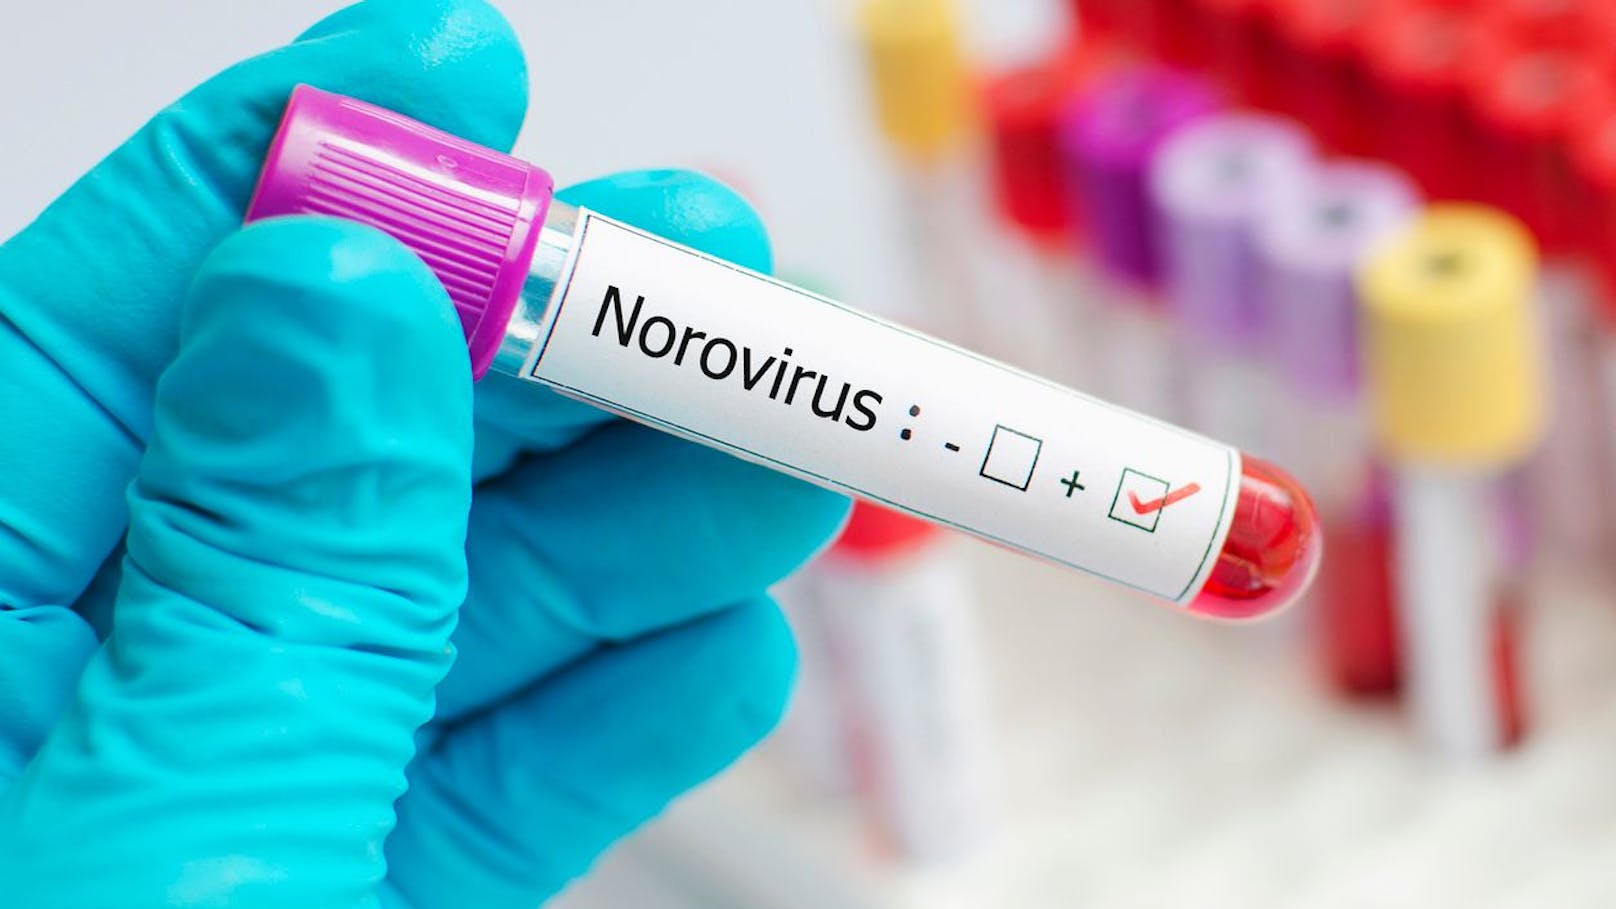 Das <strong>Norovirus</strong> ist ein hochansteckendes Virus, das Brechdurchfall verursacht. Es genügen weniger als 100 Partikel, um krank zu machen. Betroffene scheiden Milliarden über ihren Stuhl und Erbrochenes aus. Da es sich in der Luft befindet, kann man sich durch Einatmen der Partikel infizieren, aber auch durch infizierte Lebensmittel und Wasser sowie kontaminierte Oberflächen.